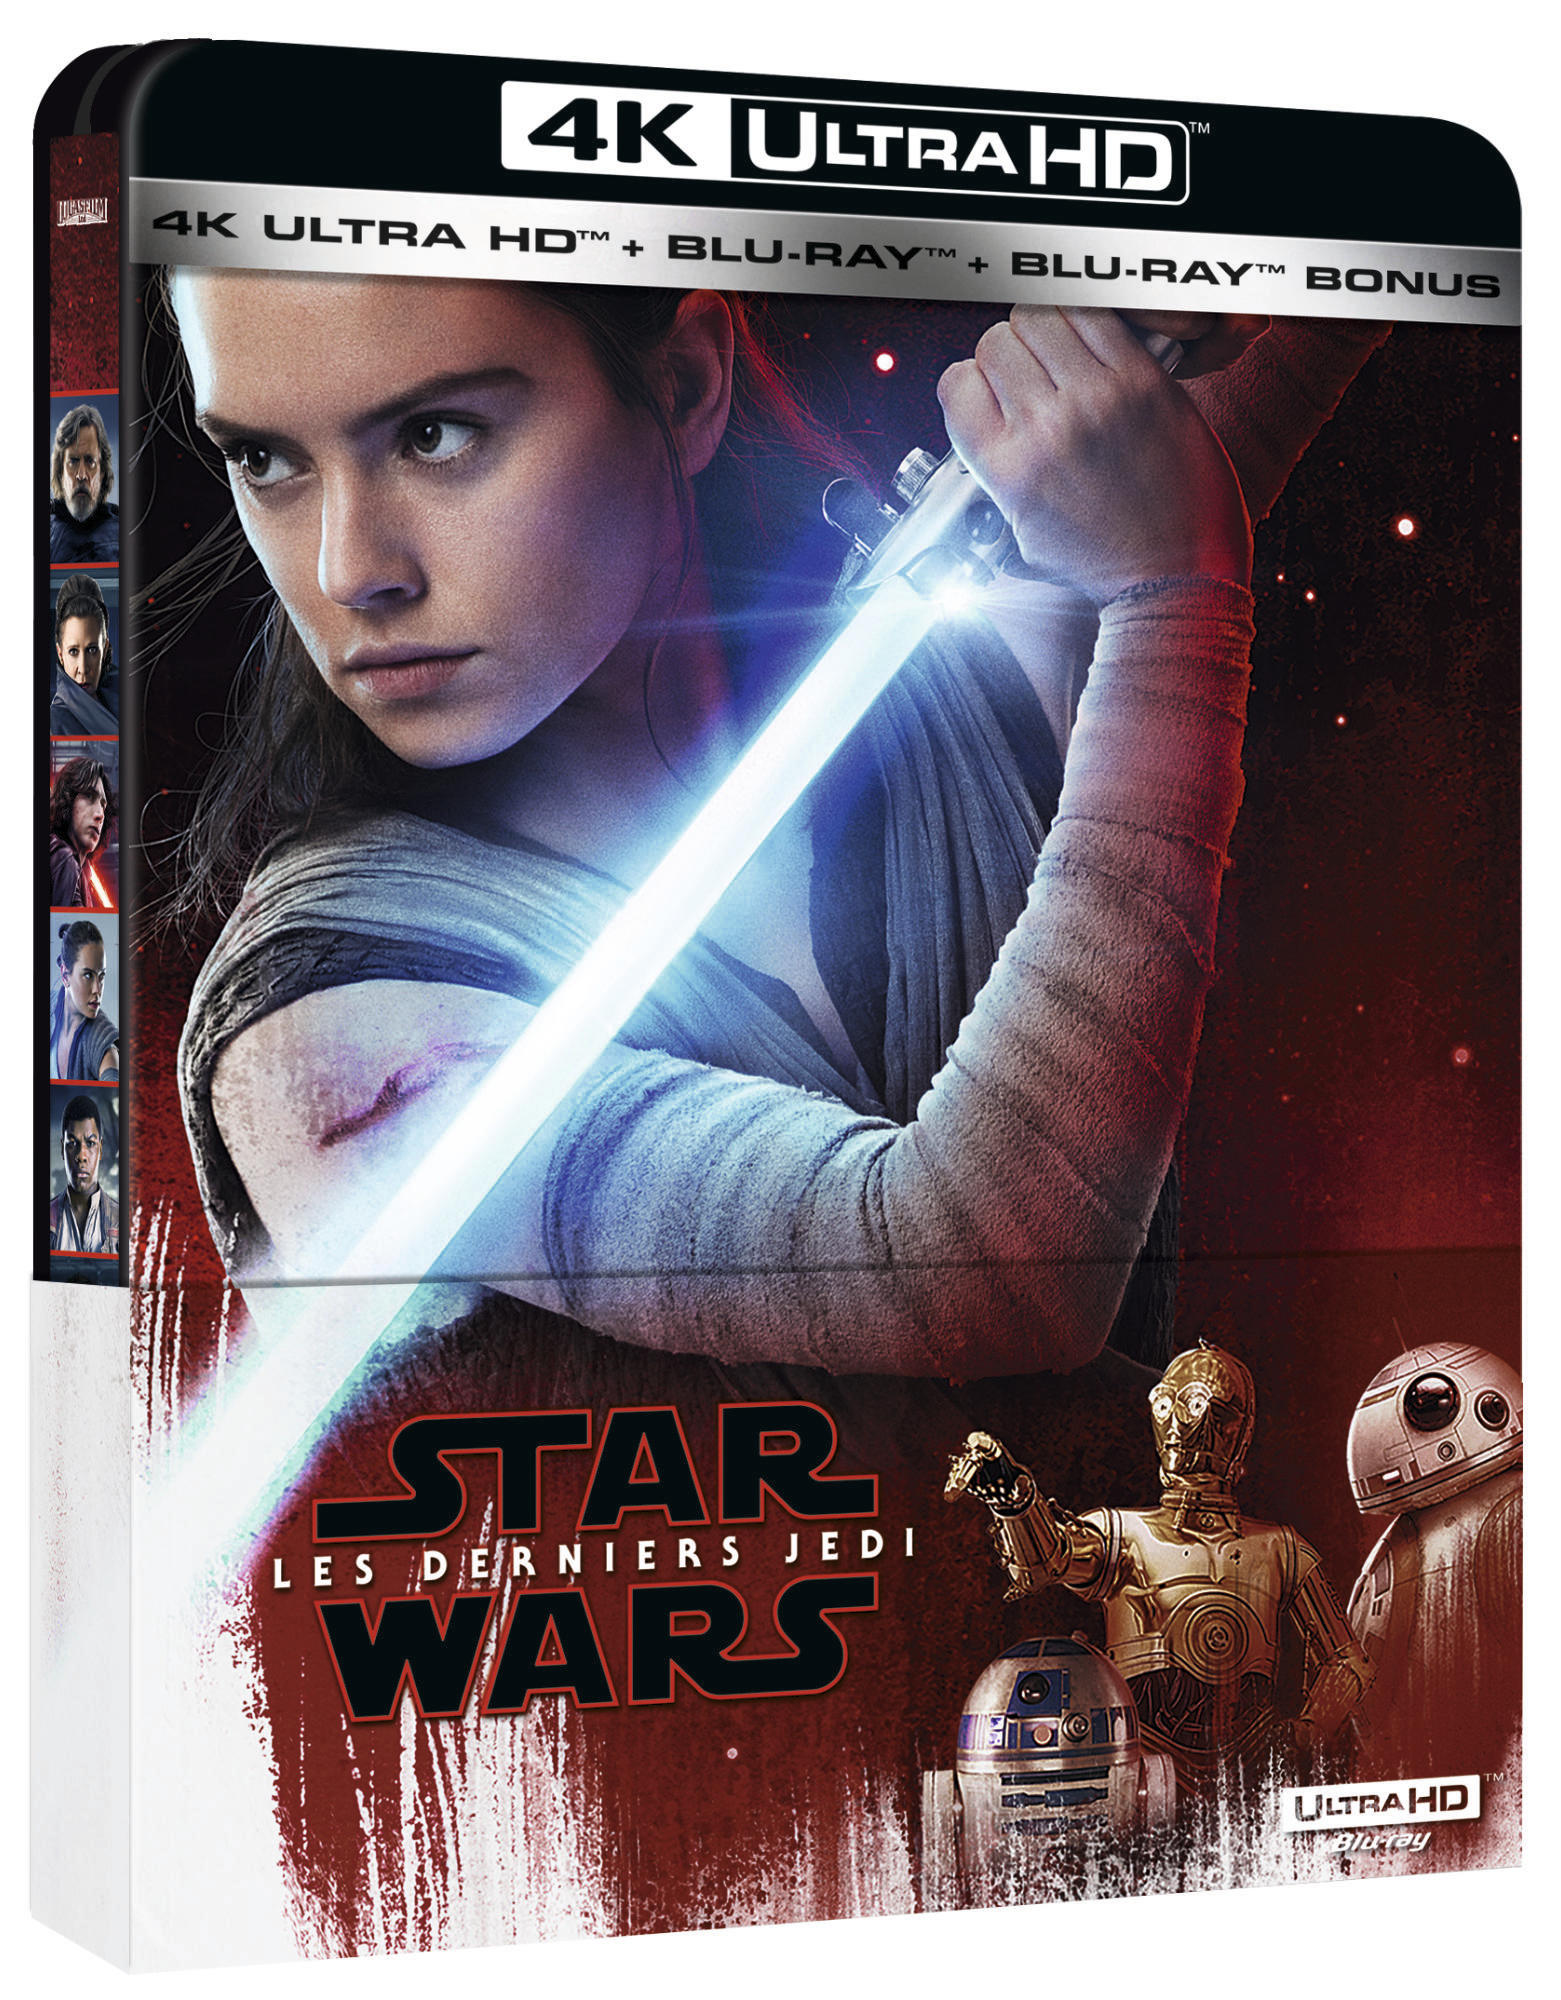 Star Wars : Les Derniers Jedi - SteelBook 4K UHD + Blu-ray + Blu-ray bonus